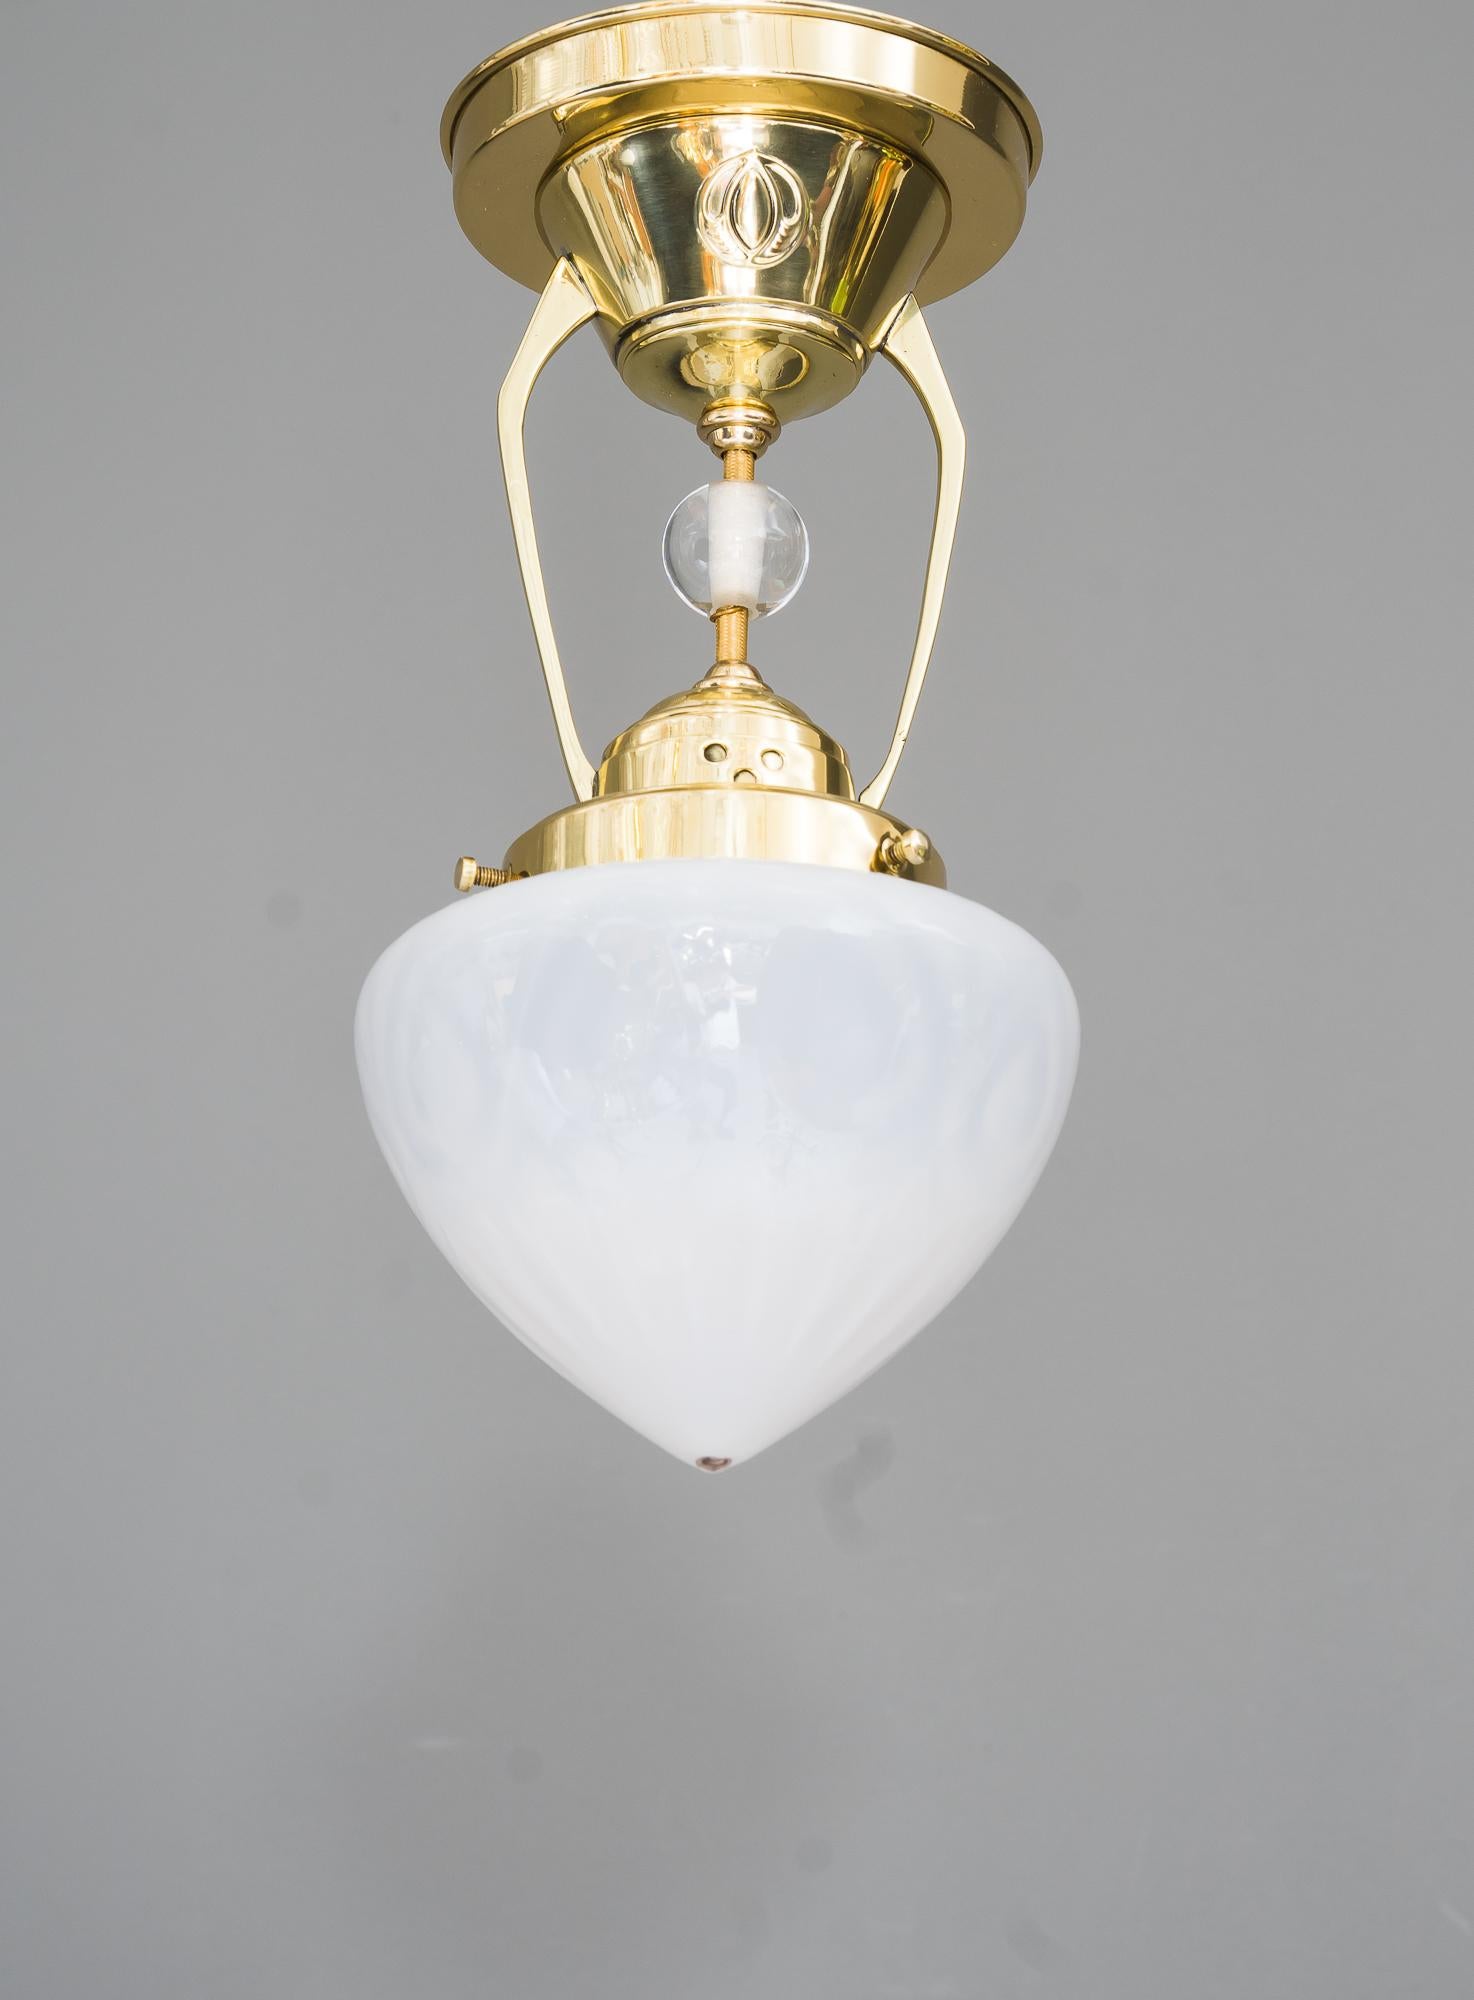 Austrian Art Deco Ceiling Lamp, Around 1920s